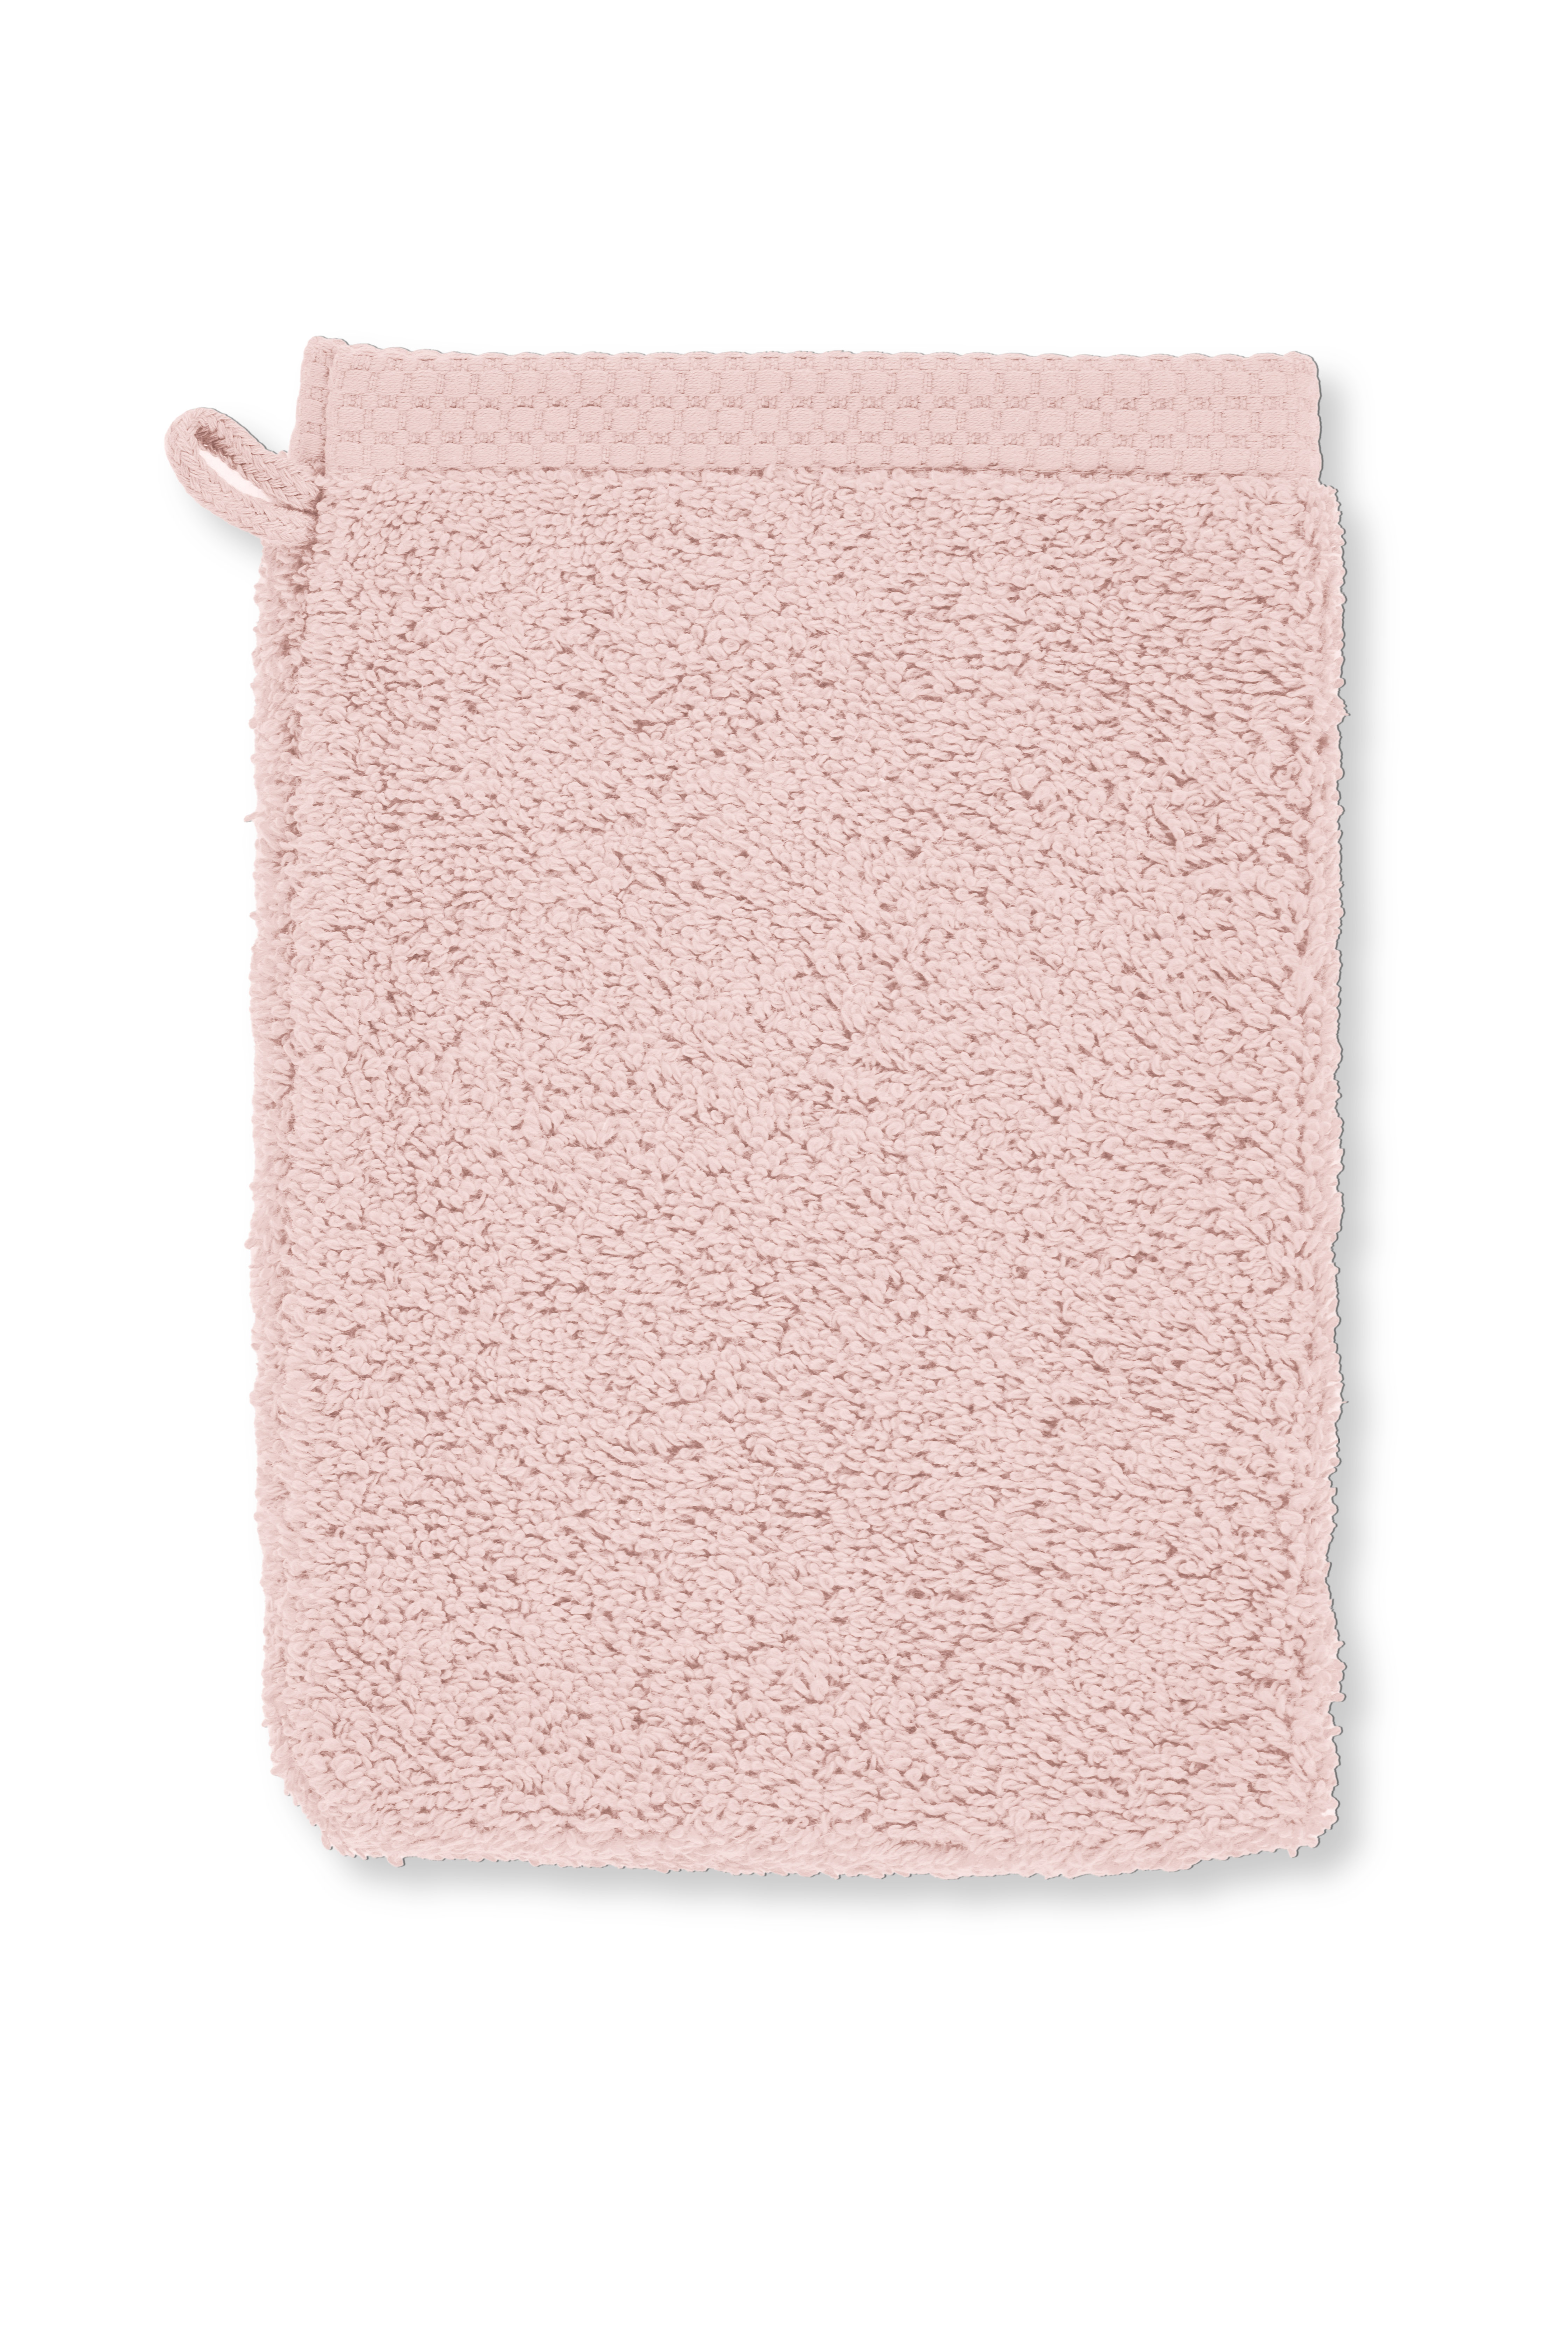 Washing glove DELUX 15x21cm - set/2, soft pink